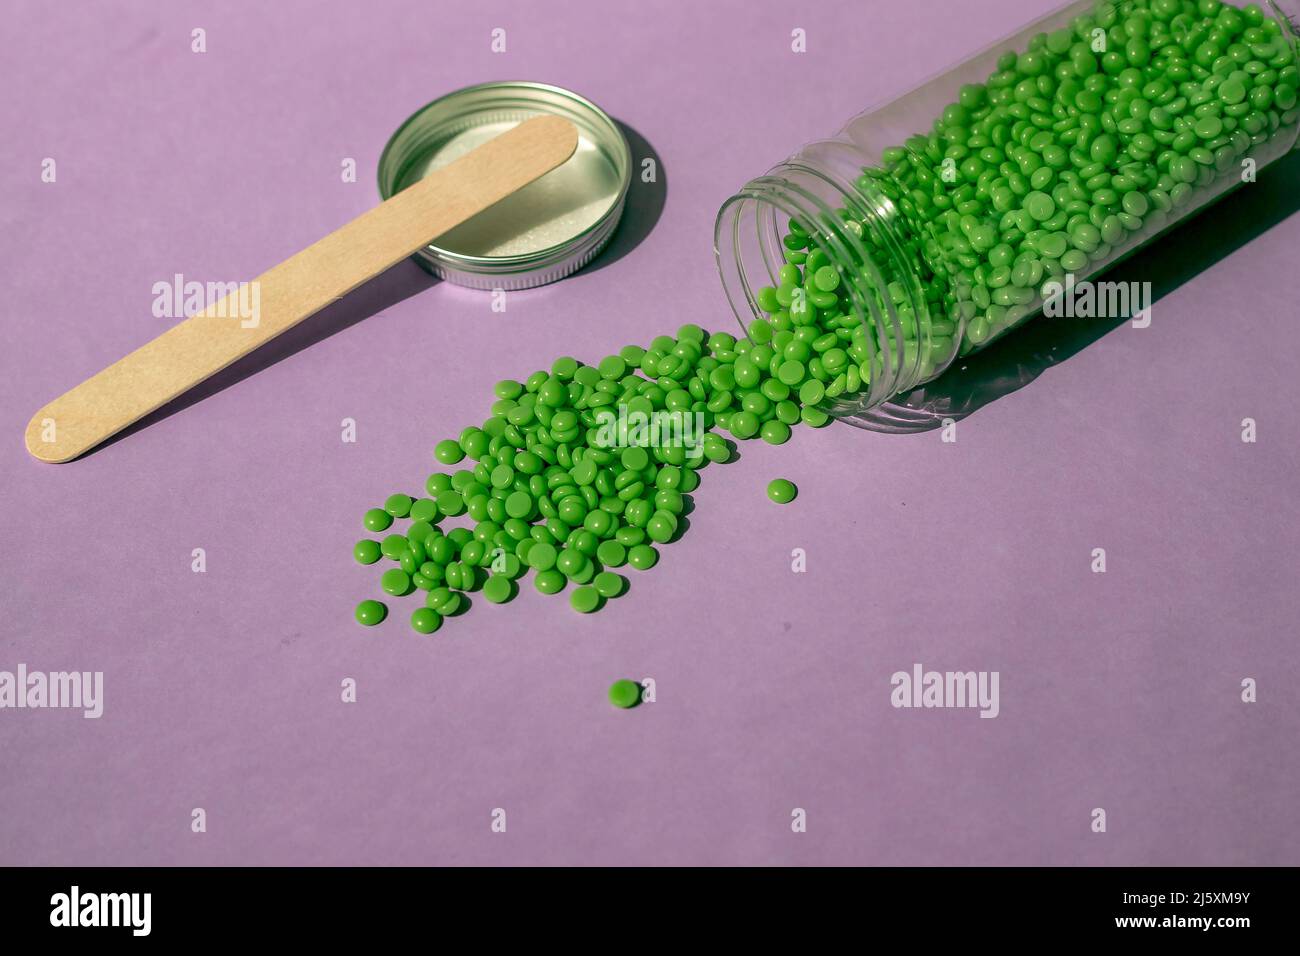 Splendidi granuli di cera verde per la depilazione vengono versati da un vaso trasparente su sfondo viola chiaro, una spatola di legno. Epilazione, depilazione, r Foto Stock